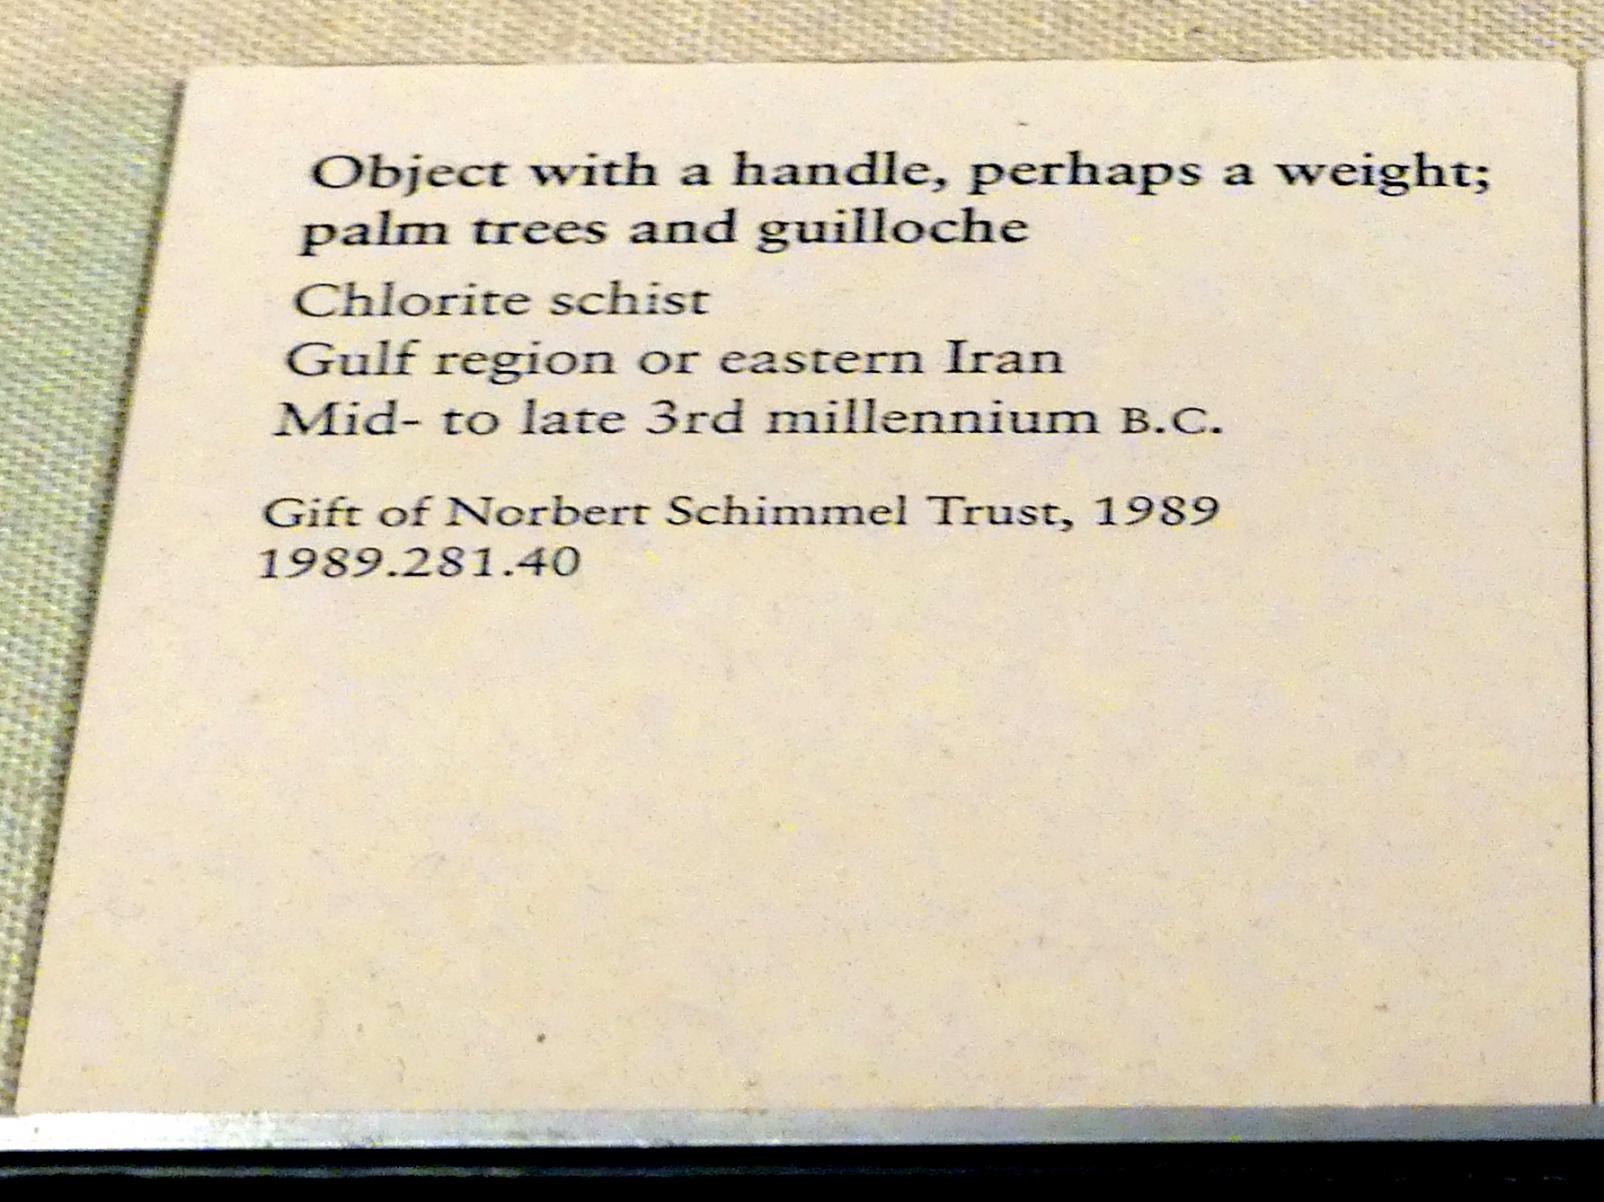 Objekt mit einem Griff, vielleicht ein Gewicht; Palmen und Guilloche, Frühe Bronzezeit, 3365 - 1200 v. Chr., 2500 - 2200 v. Chr., Bild 2/2